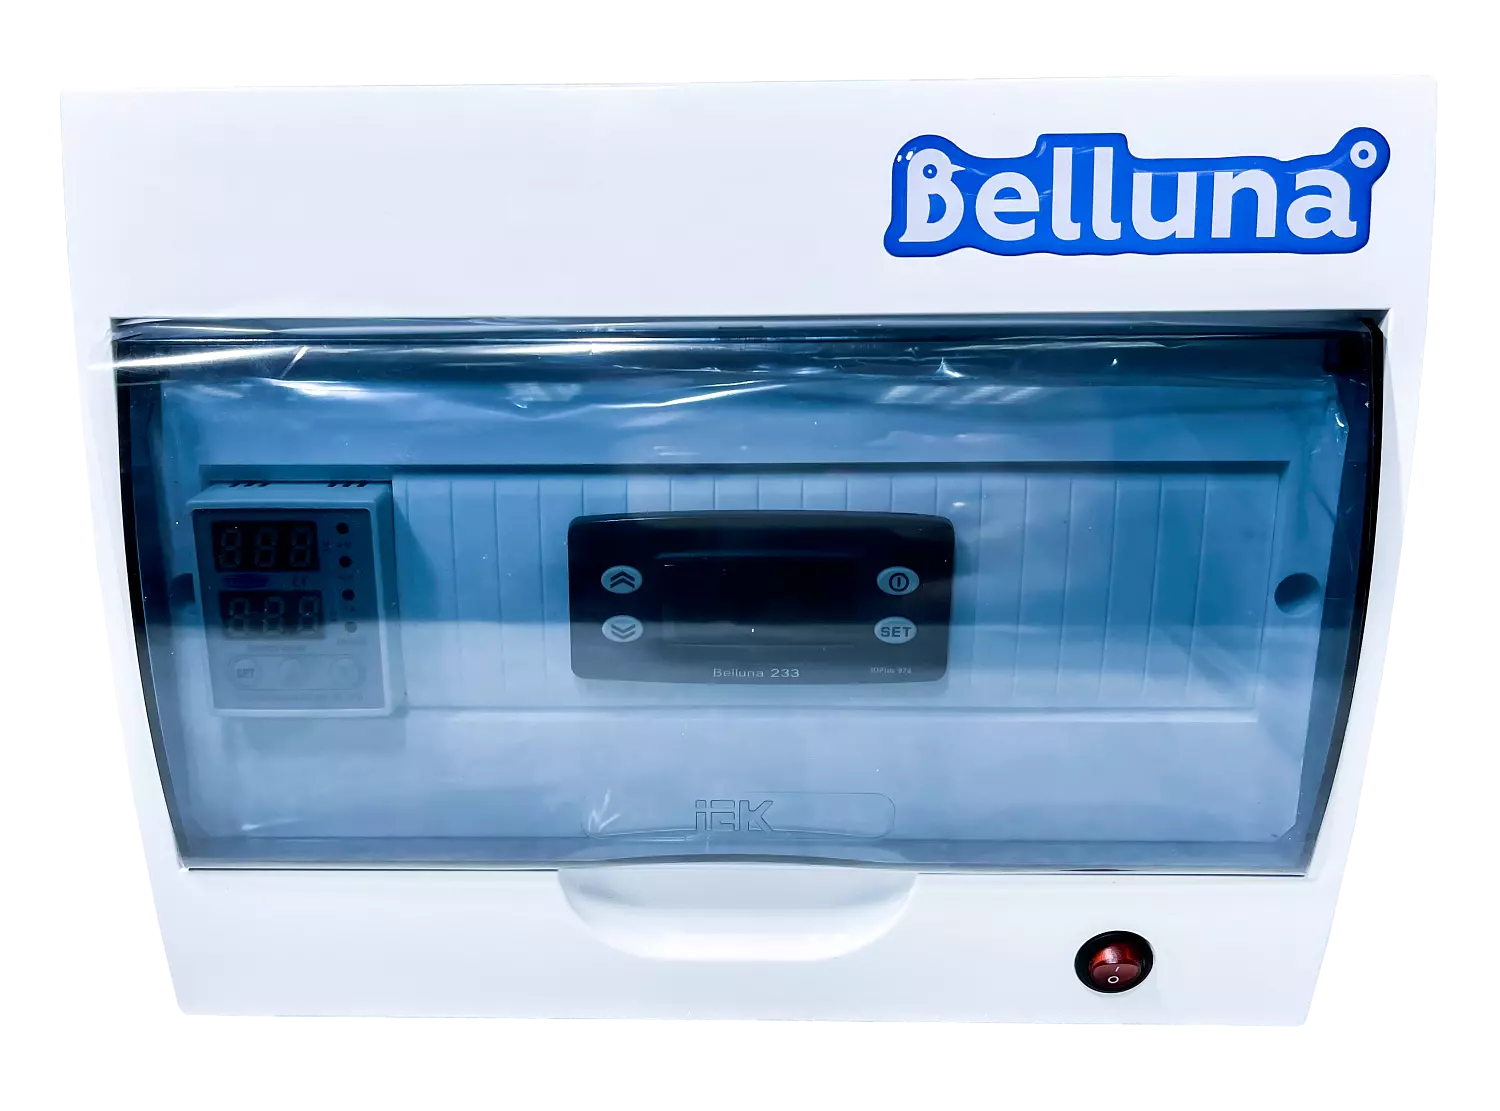 сплит-система Belluna iP-6 Нижний Новгород